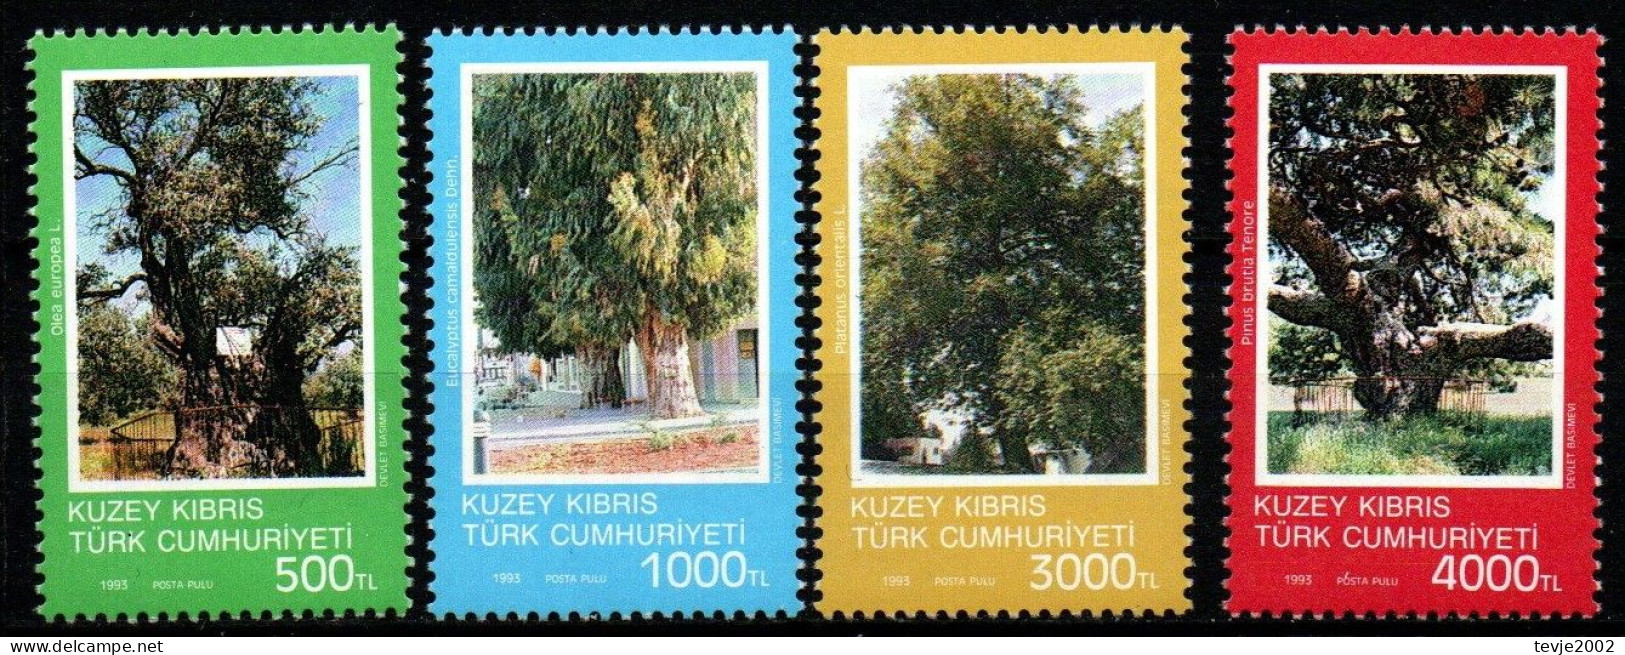 Türkisch Zypern 1993 - Mi.Nr. 355 - 358 - Postfrisch MNH - Bäume Trees - Bäume